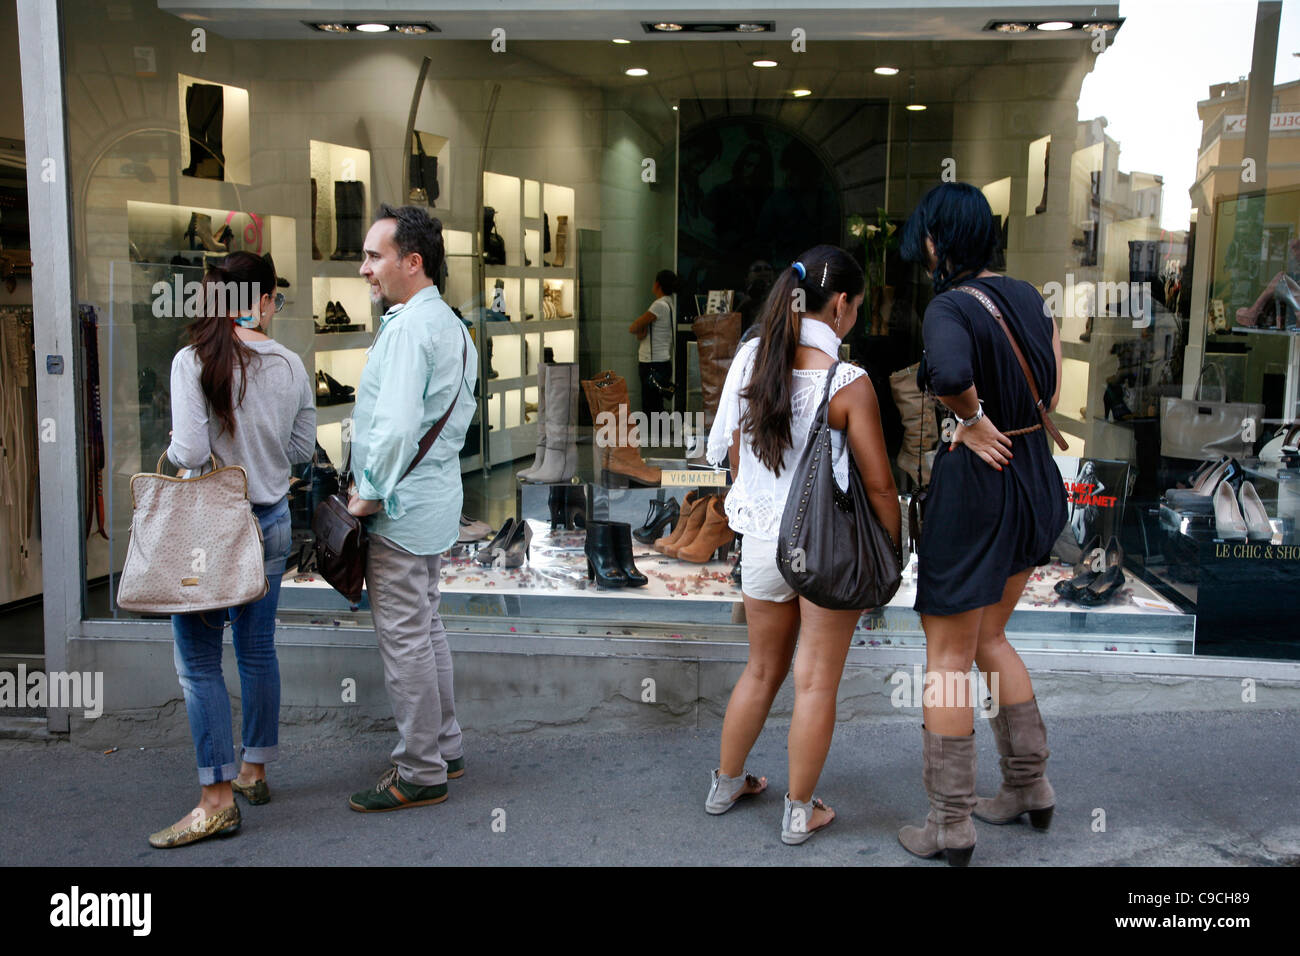 La gente a piedi la Via Giuseppe Manno, una strada pedonale con numerosi negozi, Cagliari, Sardegna, Italia. Foto Stock